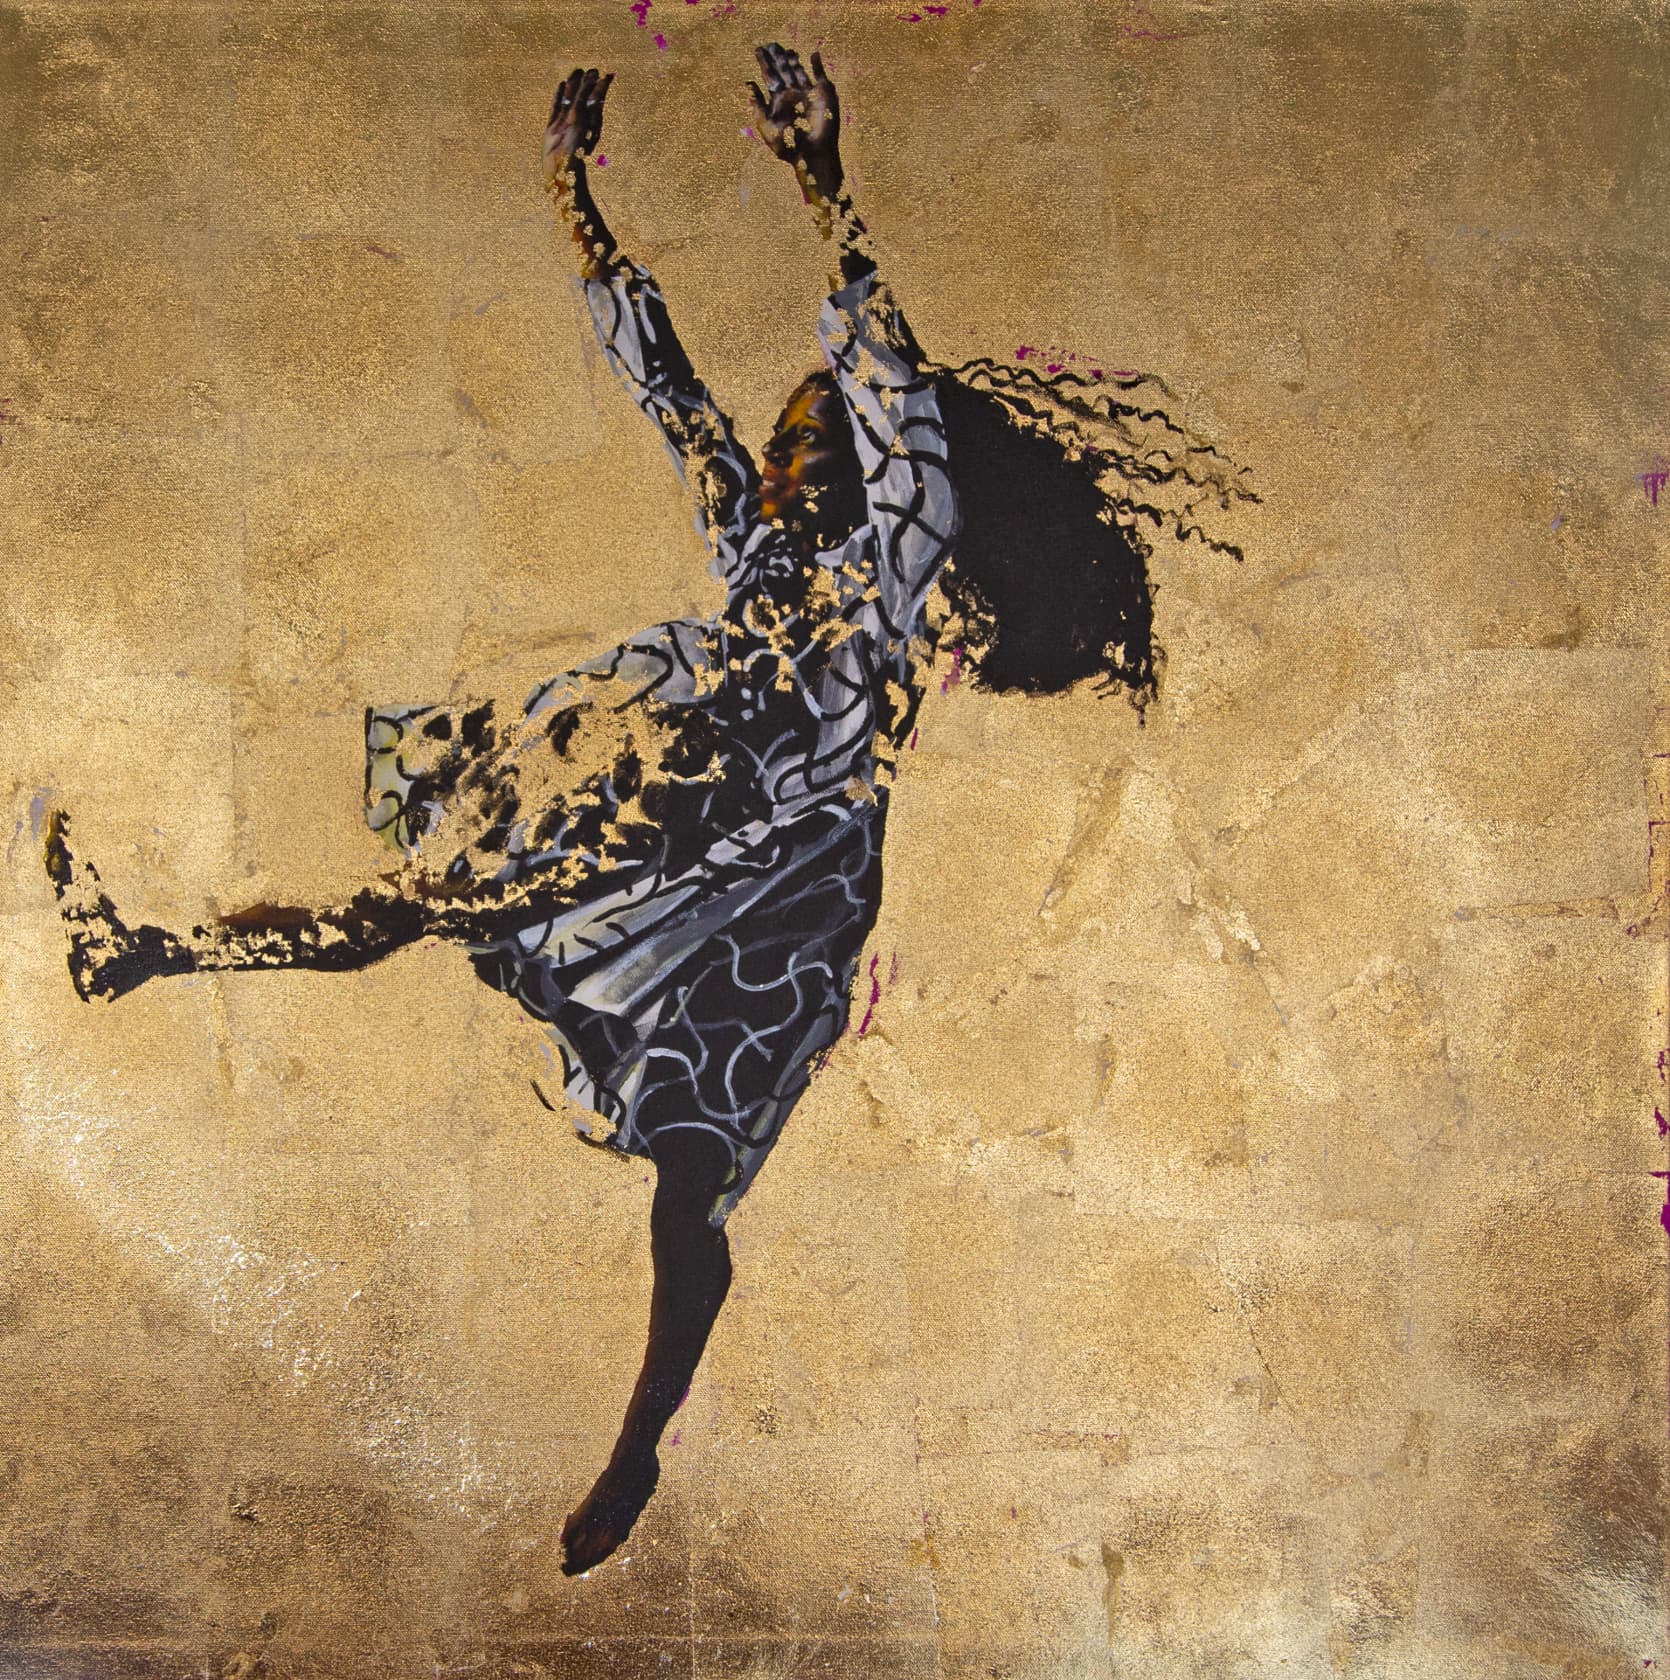 Dawn Okoro Free Fall Acrylic and Gold Leaf on Canvas